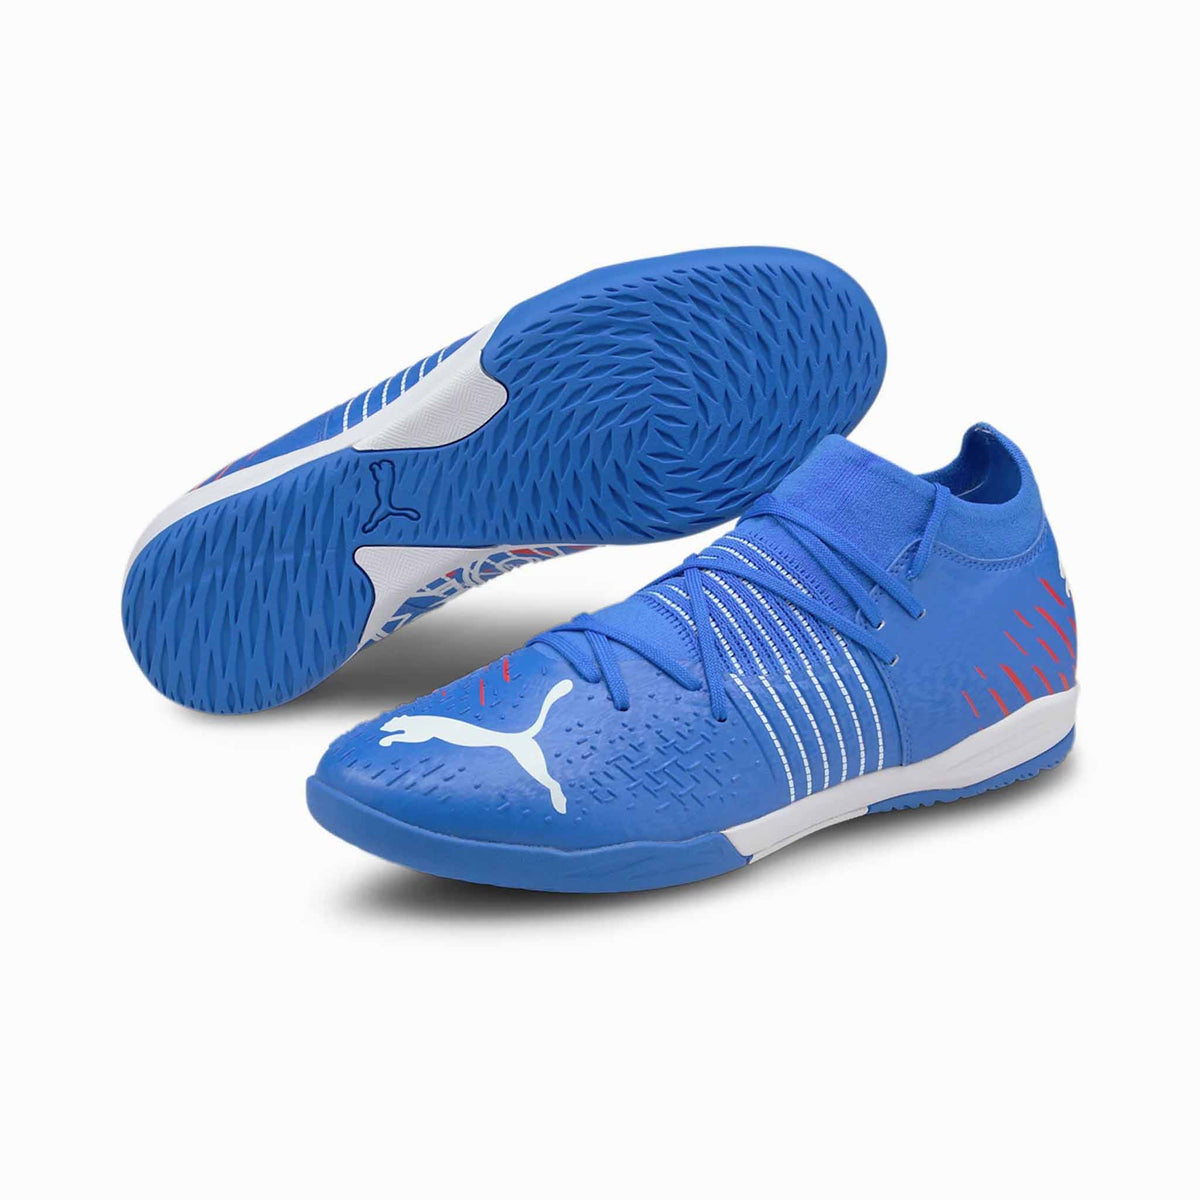 Puma Future Z 3.2 IT chaussures de soccer intérieur paire